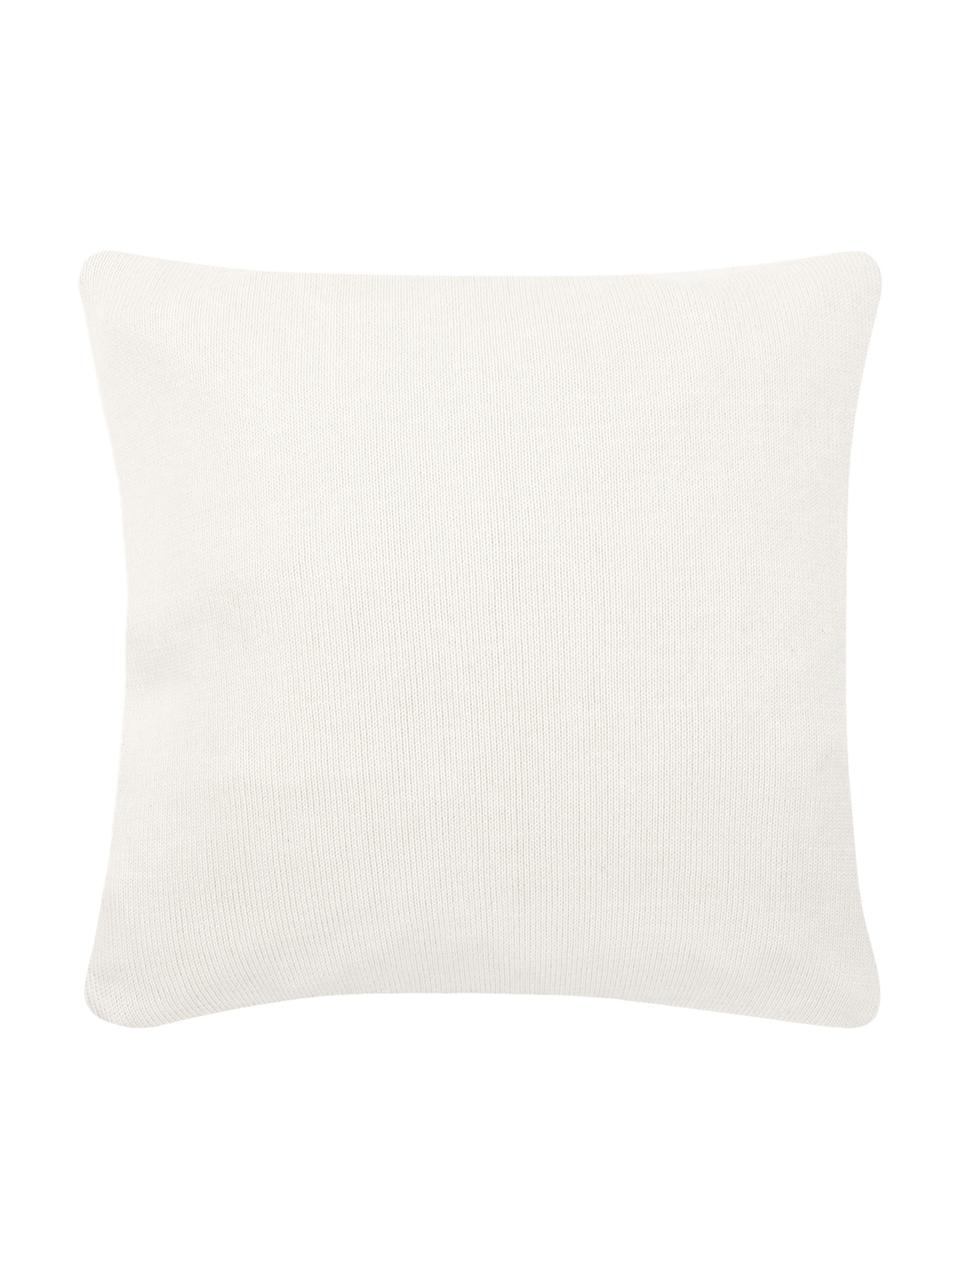 Poszewka na poduszkę Kelly, 100% bawełna, Kremowobiały, S 40 x D 40 cm